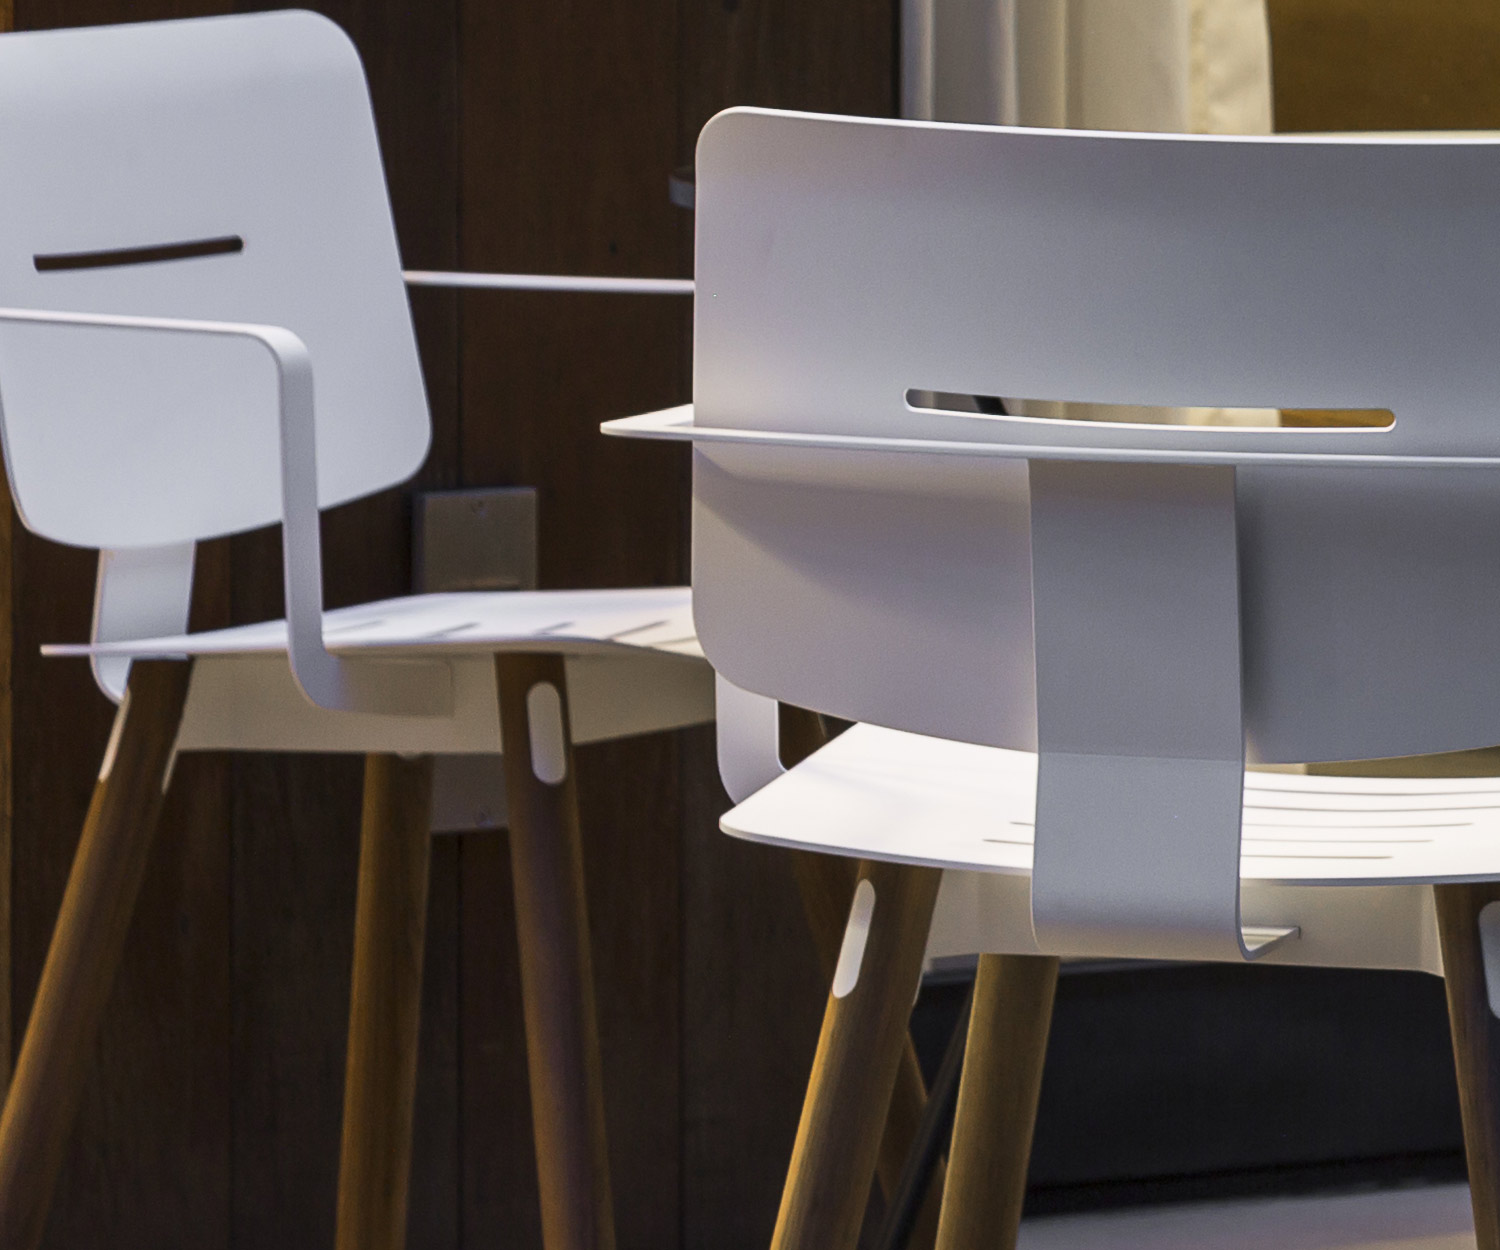 Exclusieve Oasiq Coco aluminium teak design stoel met aluminium zitting